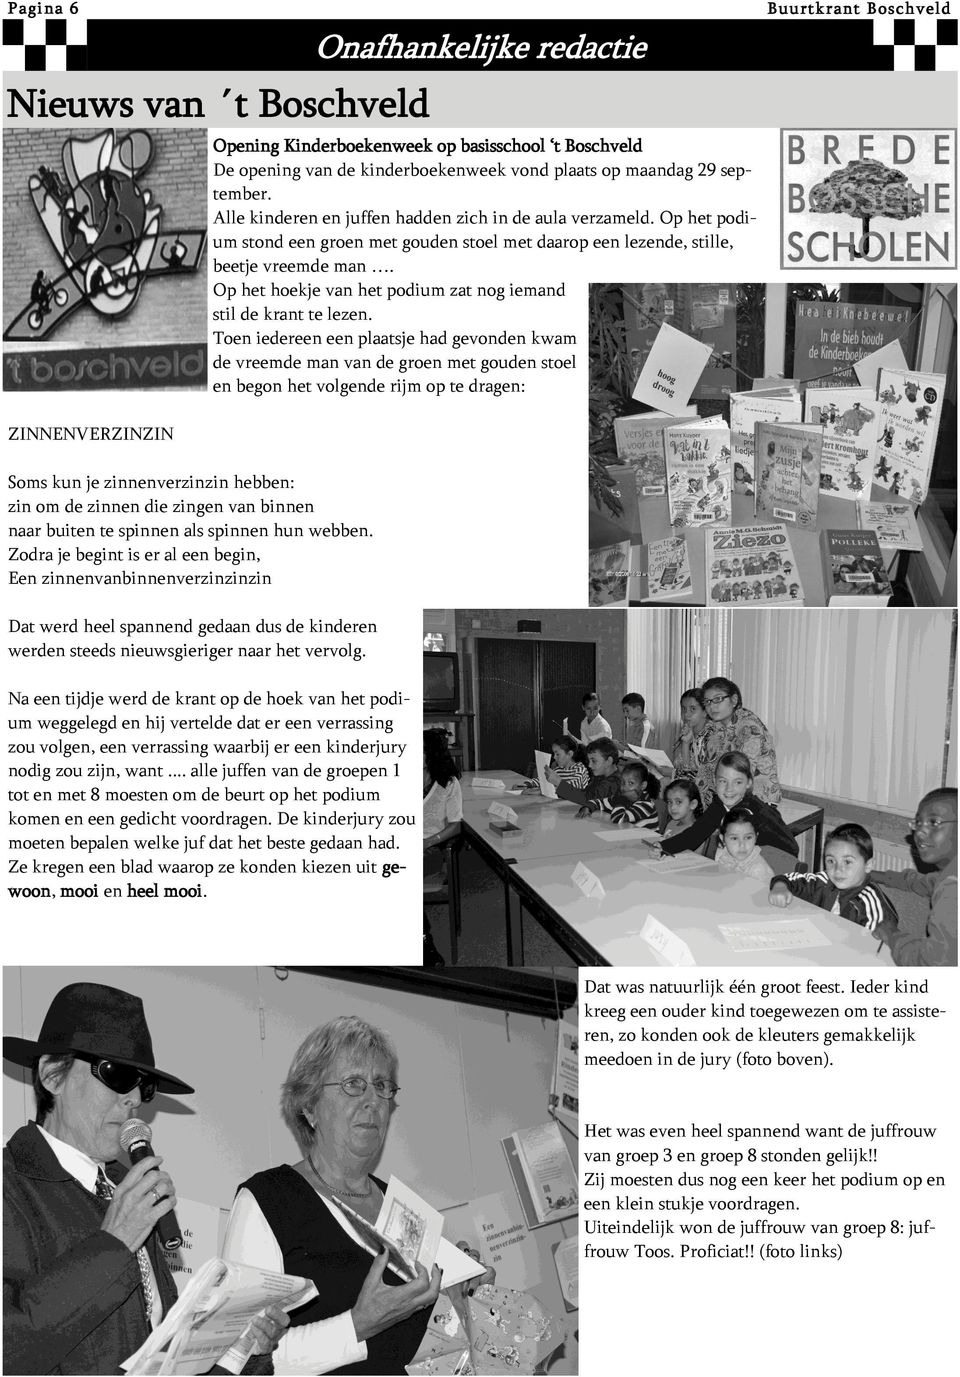 Opening Kinderboekenweek op basisschool t Boschveld De opening van de kinderboekenweek vond plaats op maandag 29 september. Alle kinderen en juffen hadden zich in de aula verzameld.